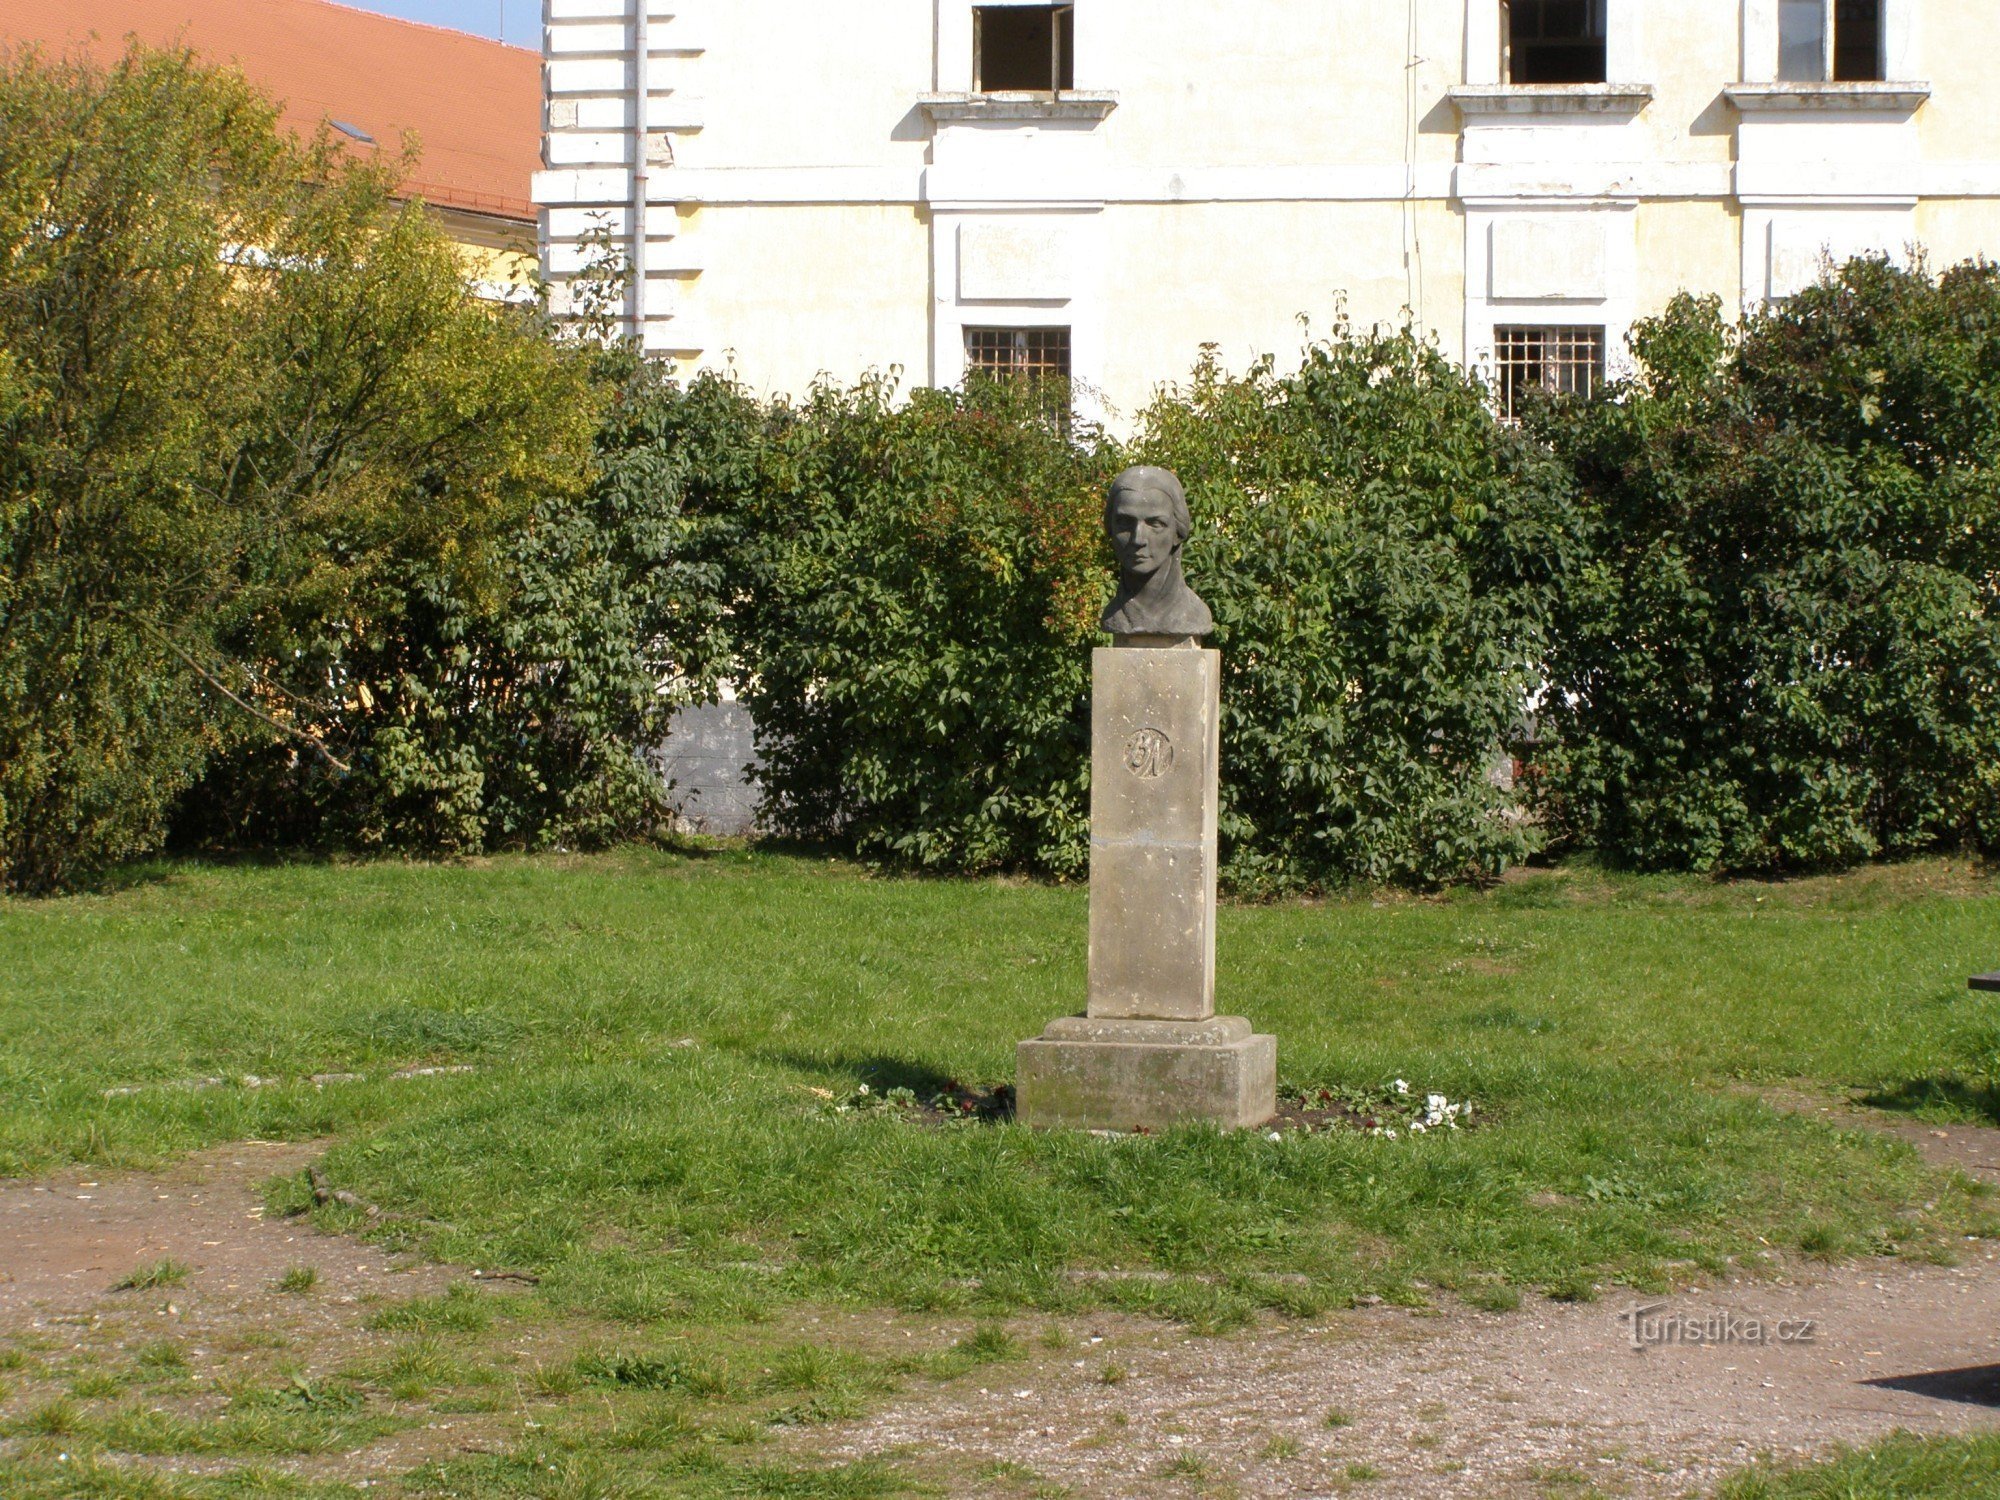 Josefov - monument to Bozena Němcová